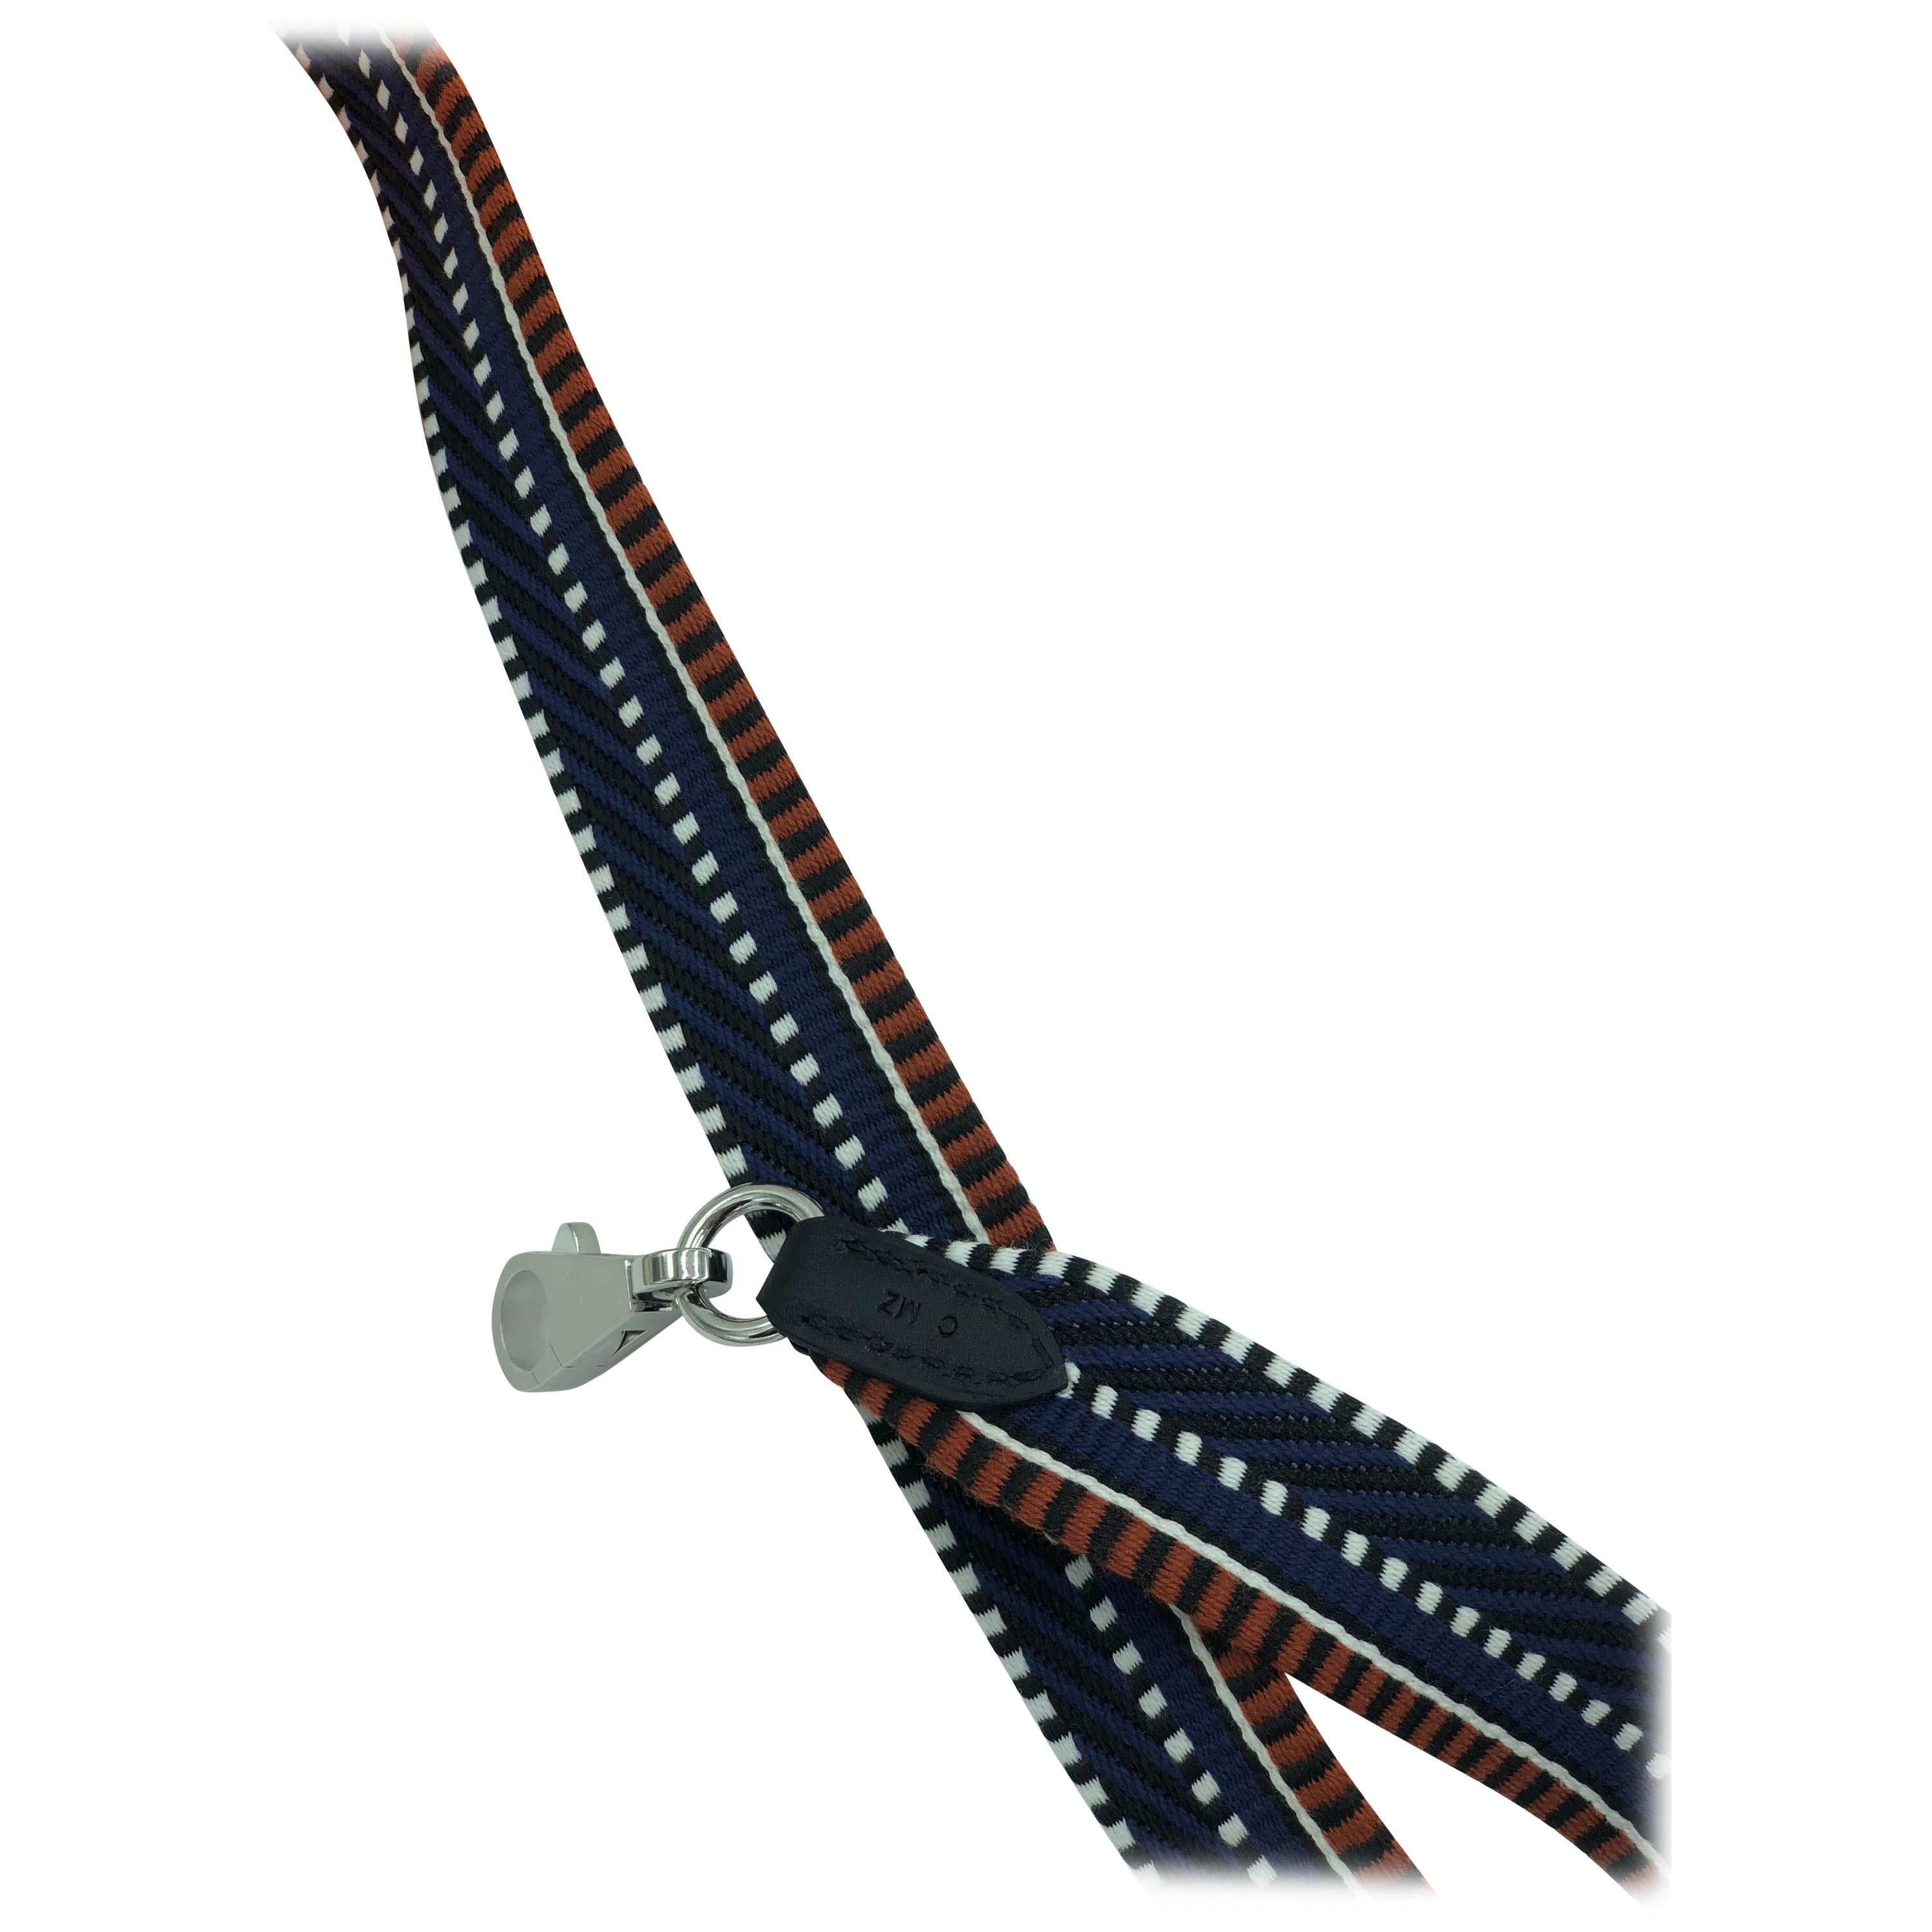 Hermes canvas strap - classic plain or sangle cavale?